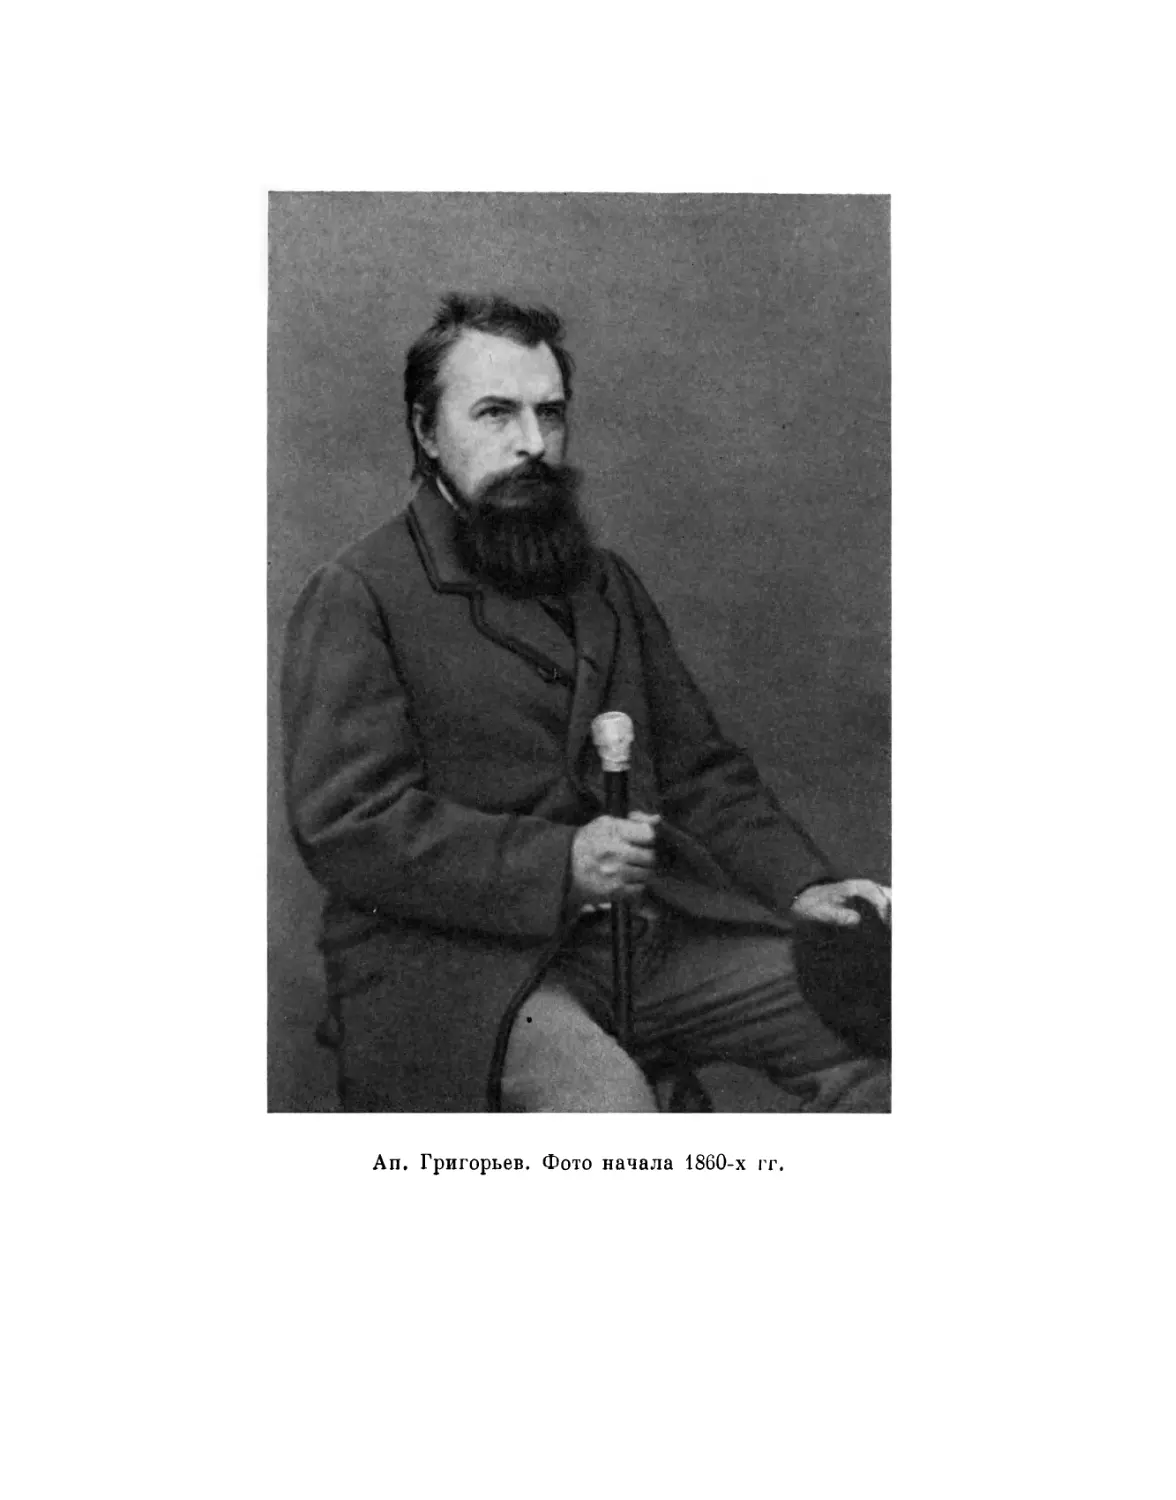 Вклейка. An. Григорьев. Фото начала 1860-х гг.